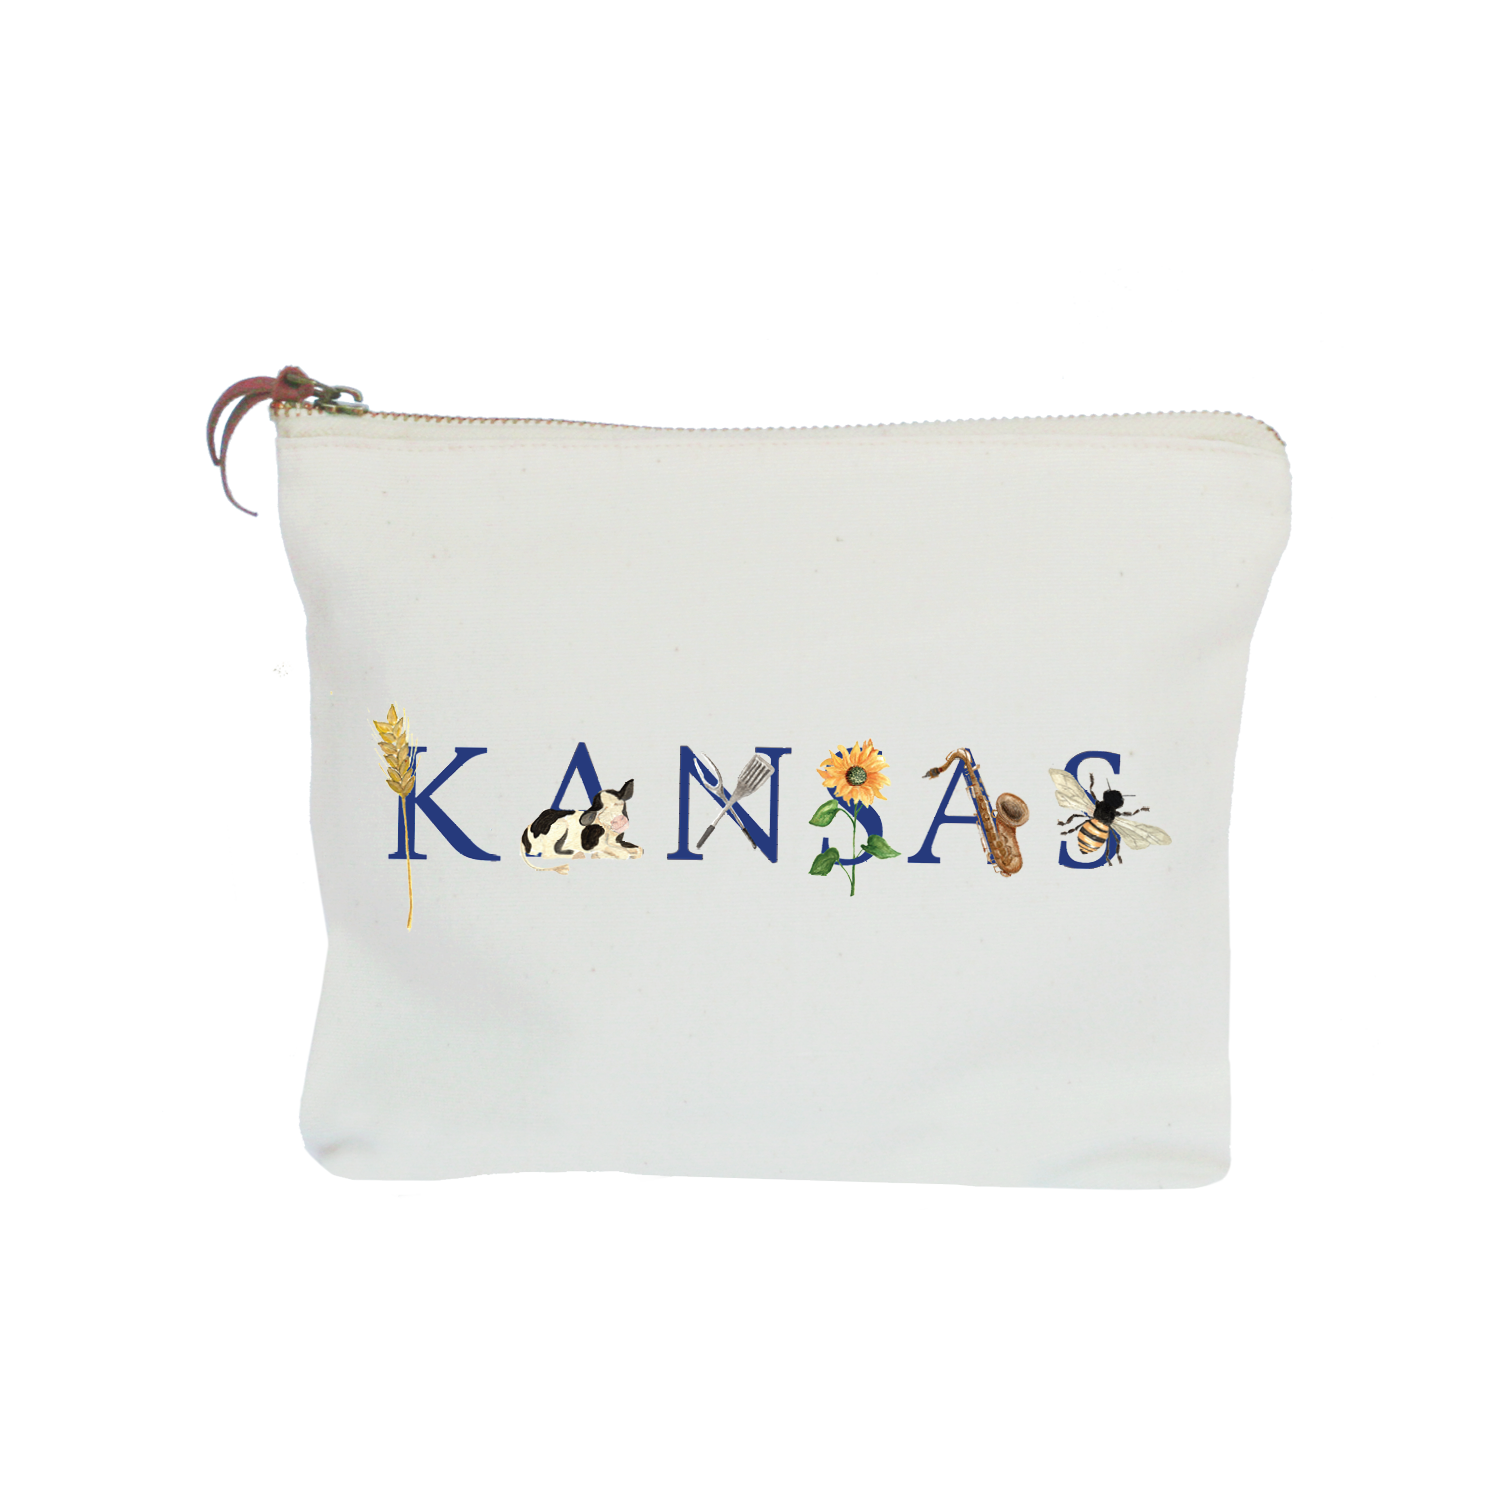 Kansas zipper pouch